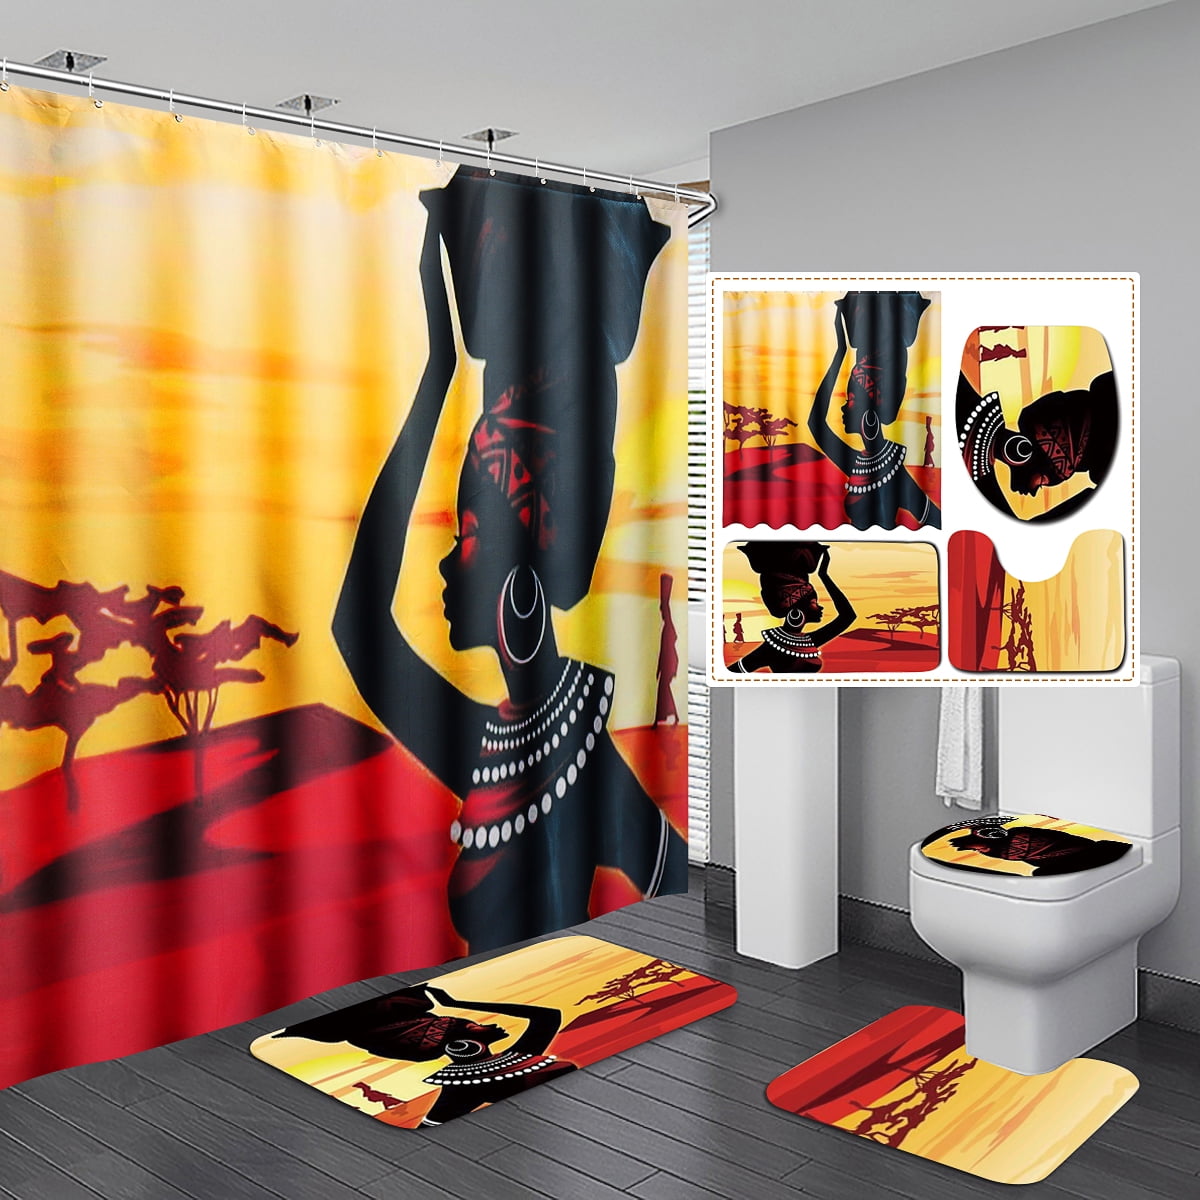 Nautical Anchor Shower Curtain Bath Mat Toilet Cover Rugs Bathroom Set 1/3/4Pcs